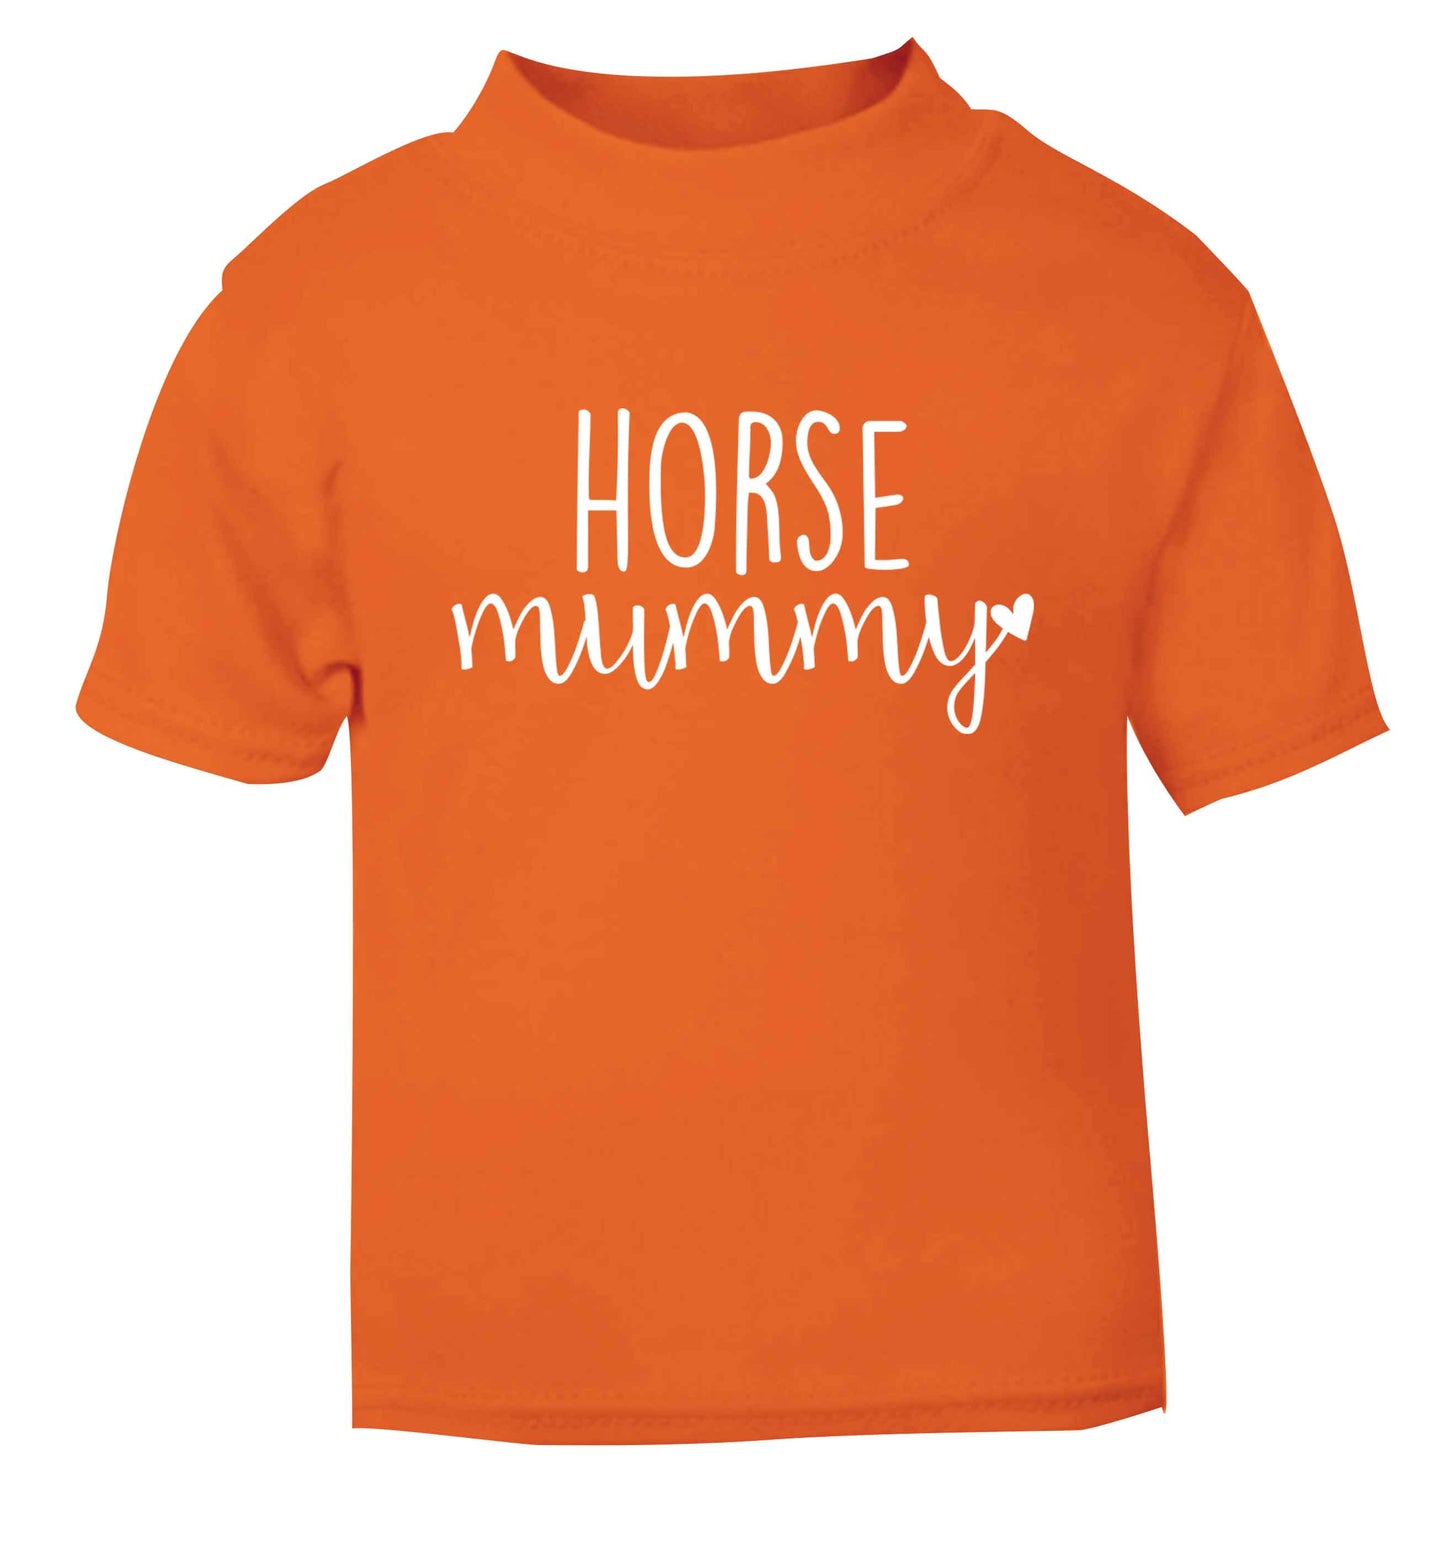 Horse mummy orange baby toddler Tshirt 2 Years